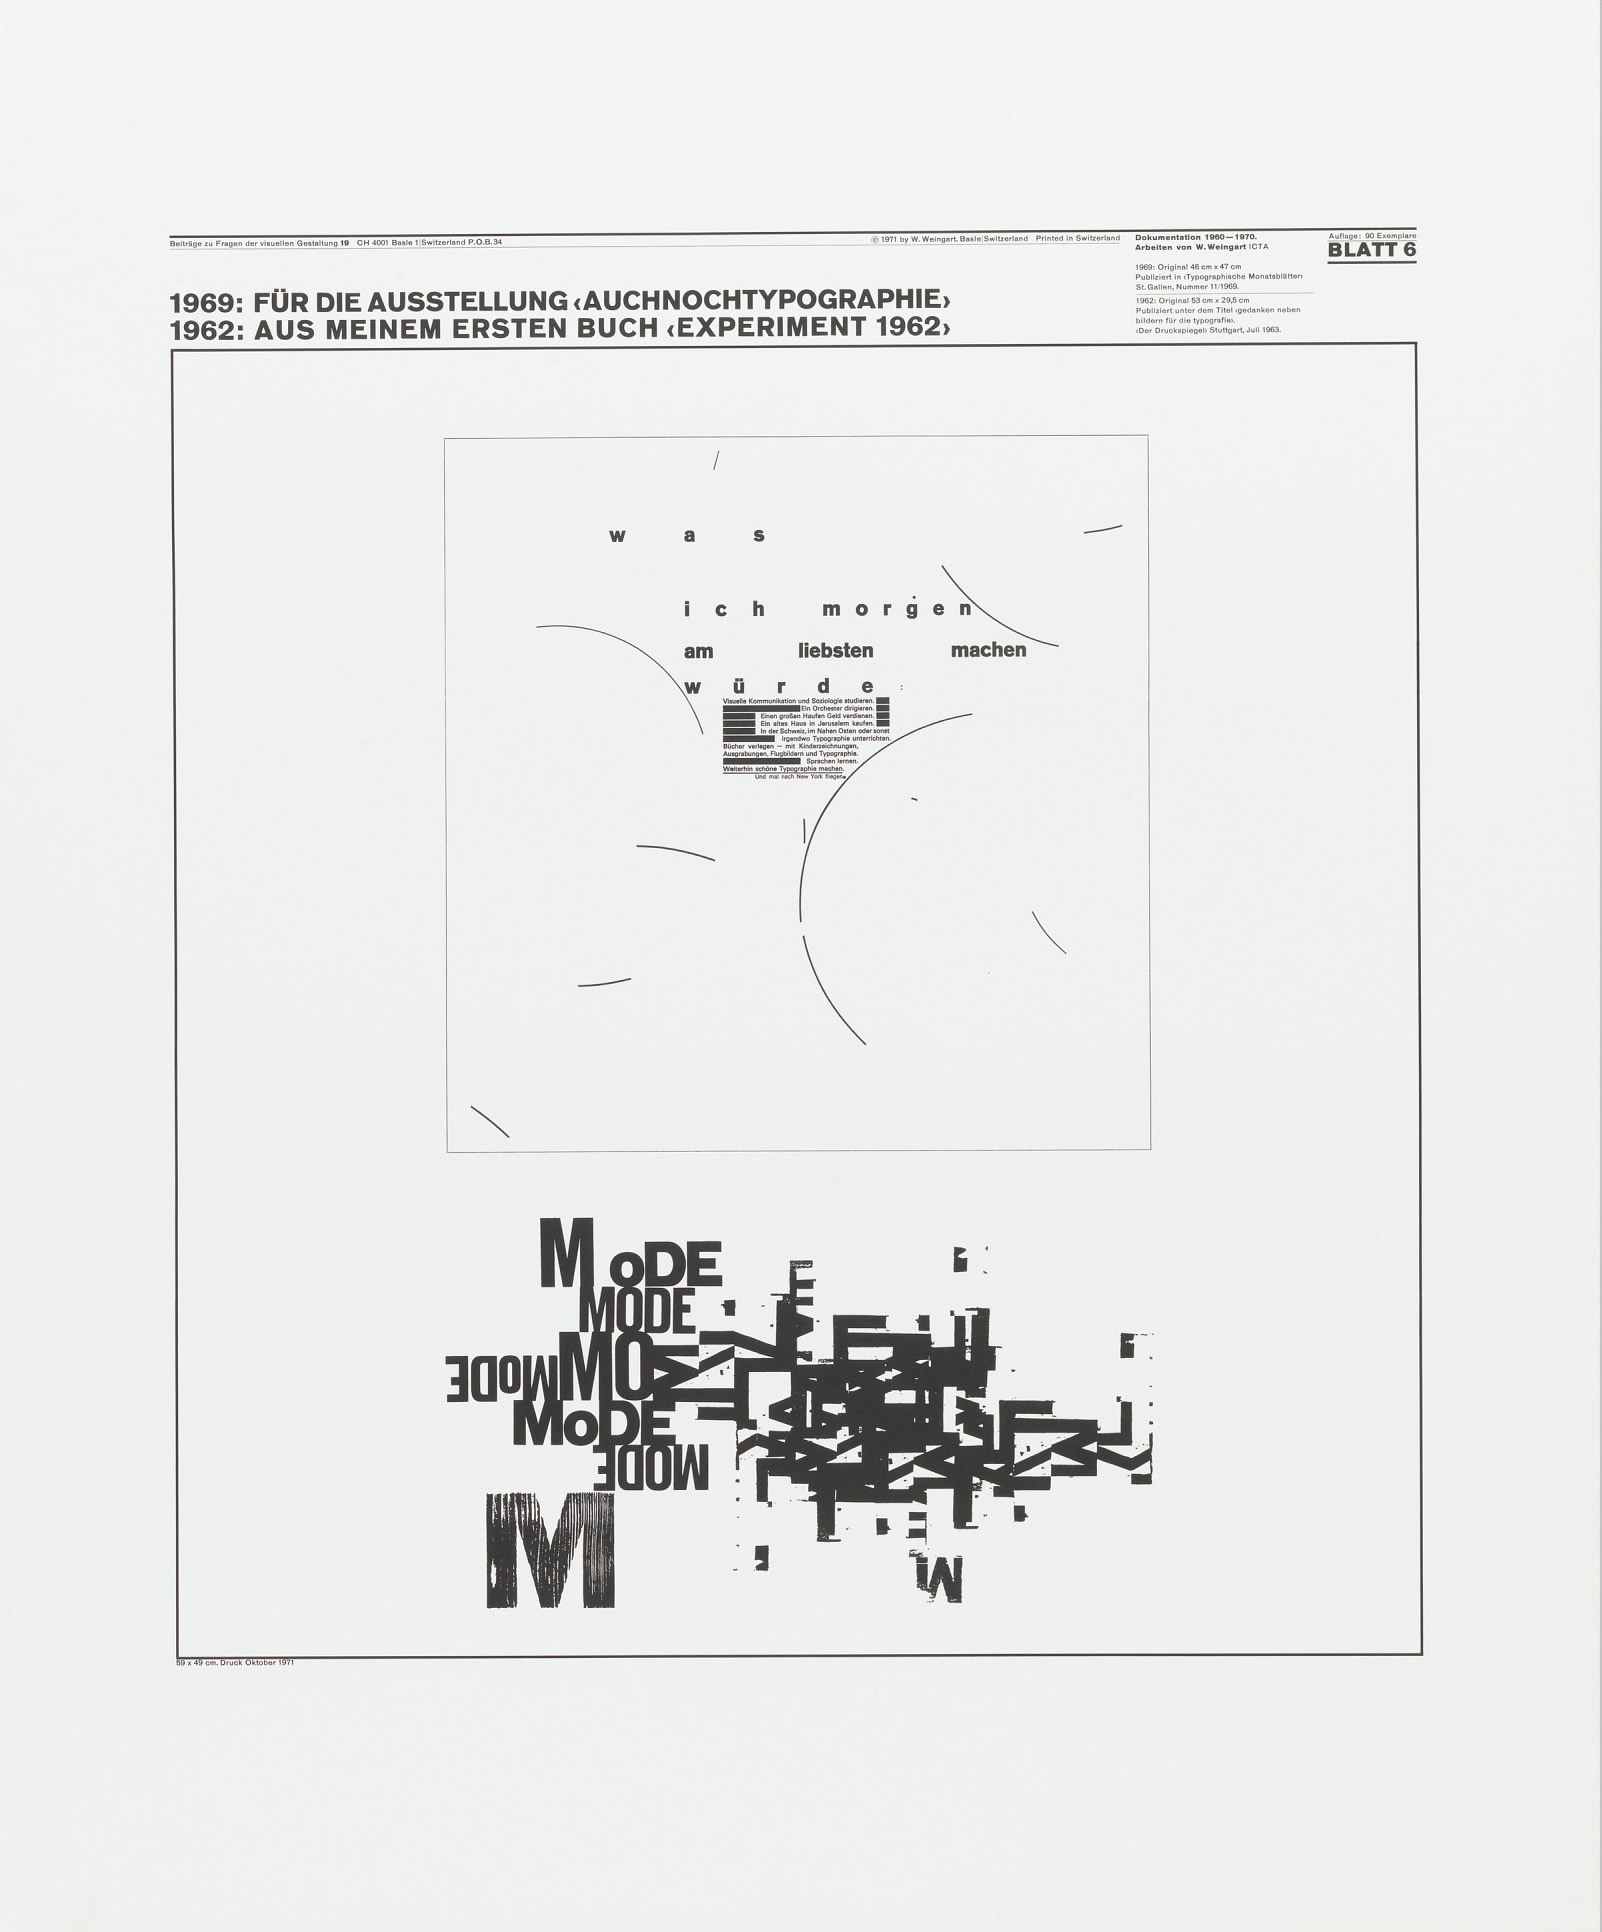 Wolfgang Weingart: Beiträge zu Fragen der visuellen Gestaltung 19, Blatt 6 from the portfolio Dokumentation 1960—1970, Arbeiten von W. Weingart, Designed 1962. Lithograph. (58.9 x 49 cm)